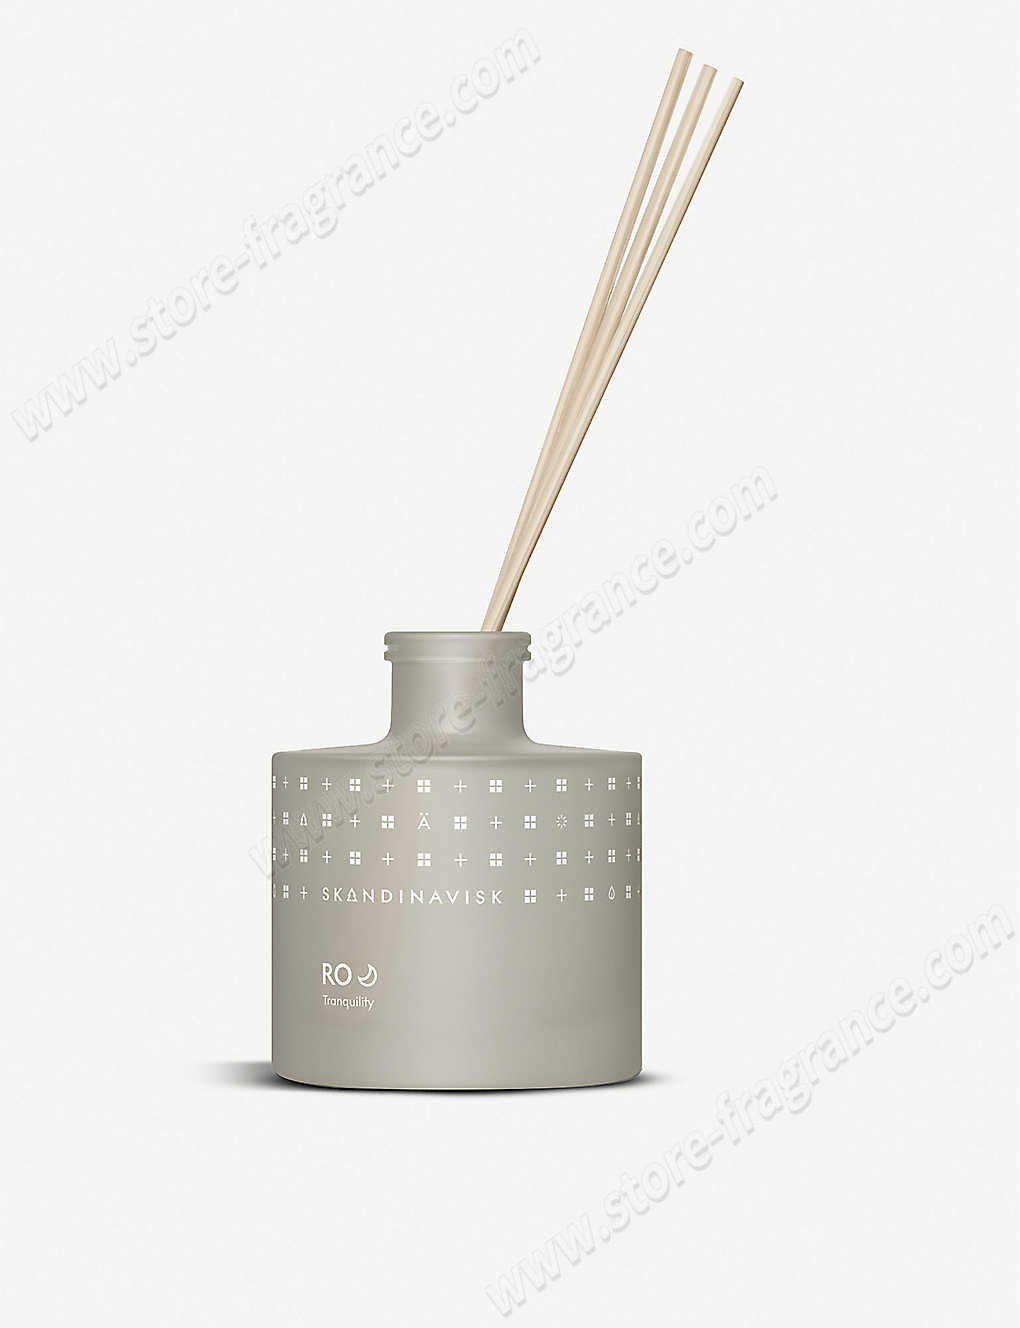 SKANDINAVISK/RO scented reed diffuser 200ml Limit Offer - SKANDINAVISK/RO scented reed diffuser 200ml Limit Offer